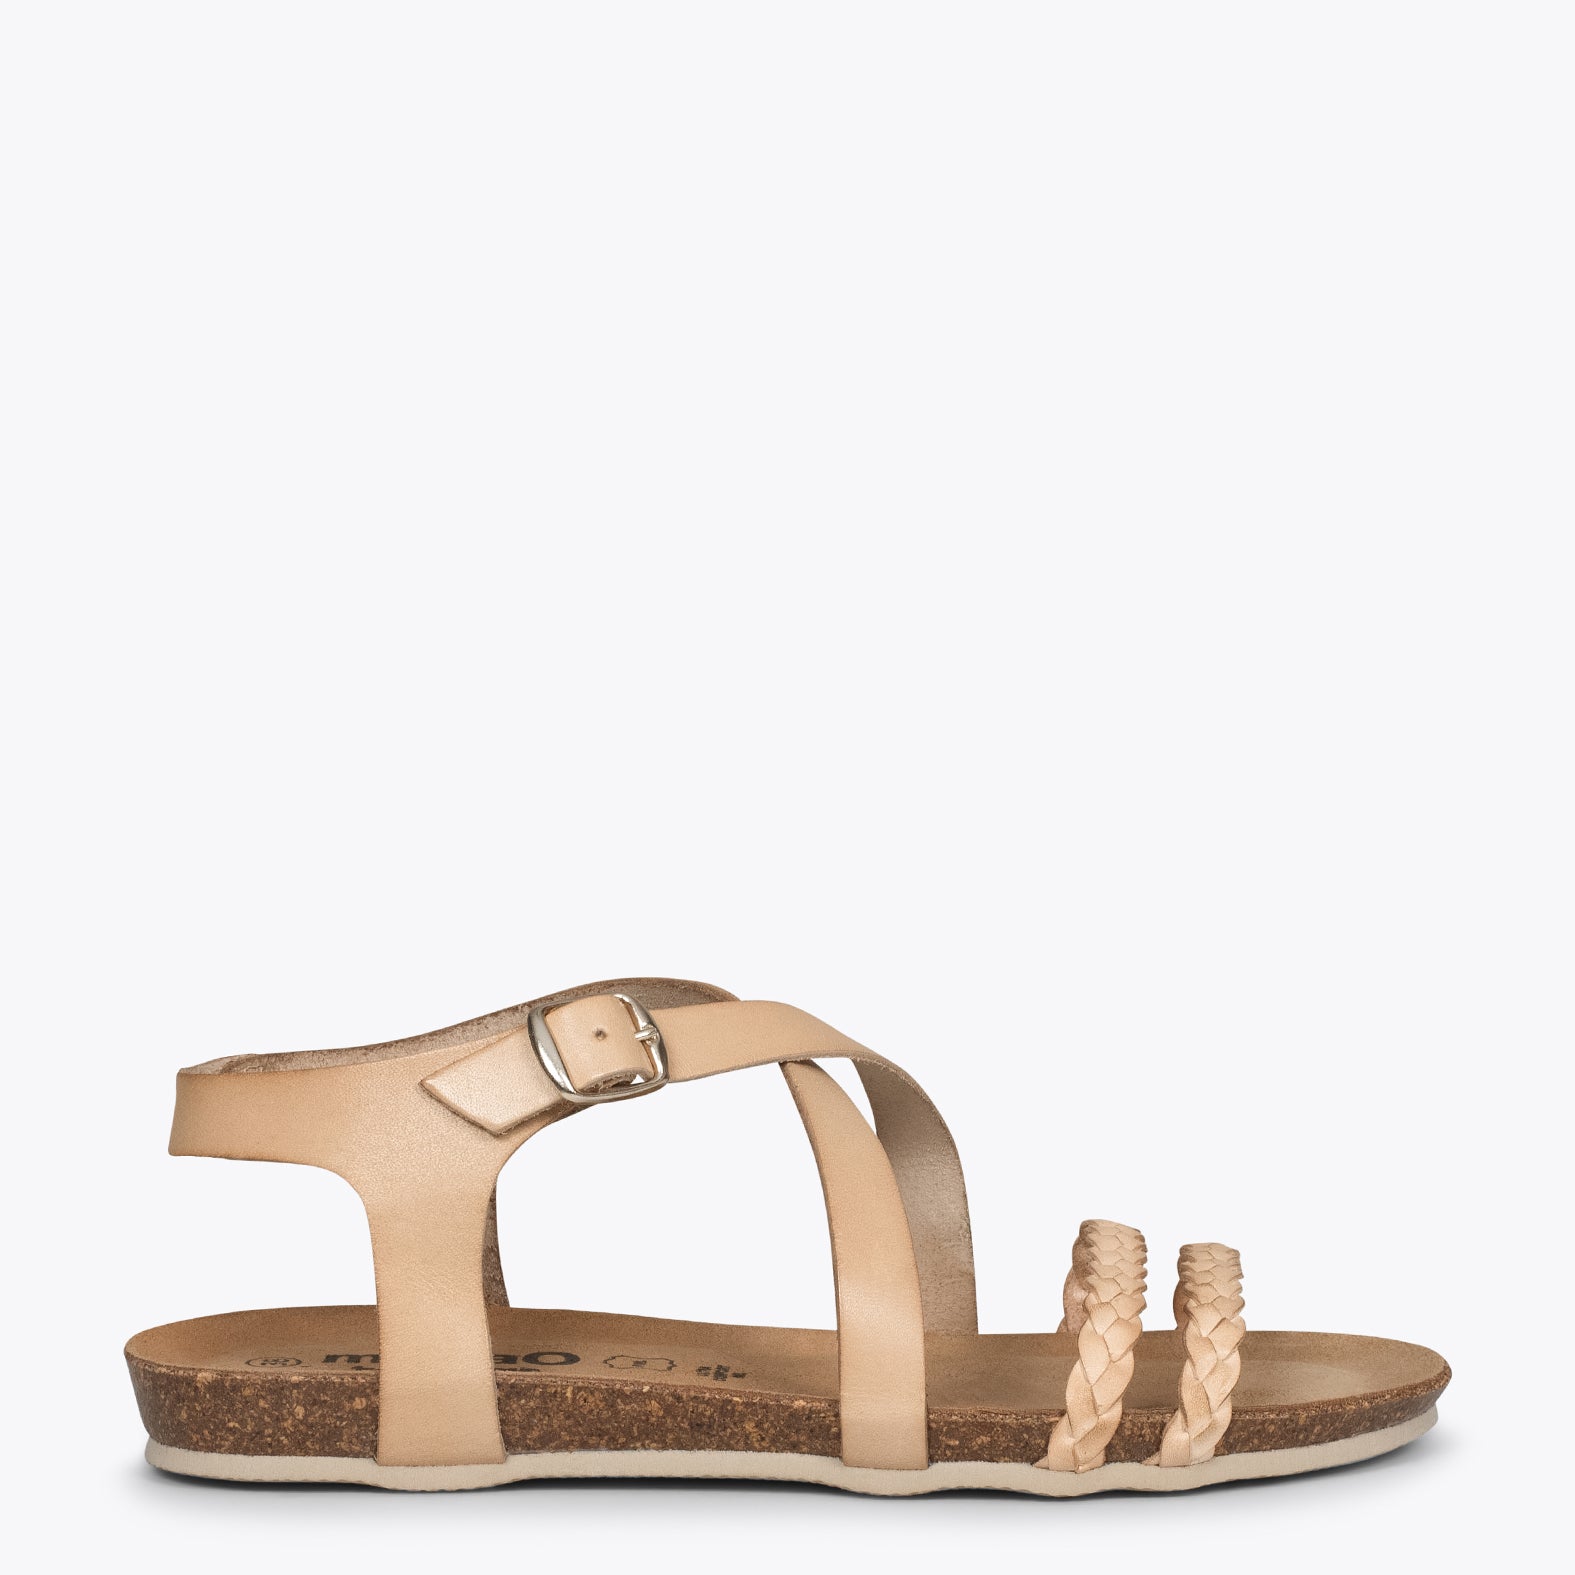 INDIE – BEIGE BIO sandals with straps